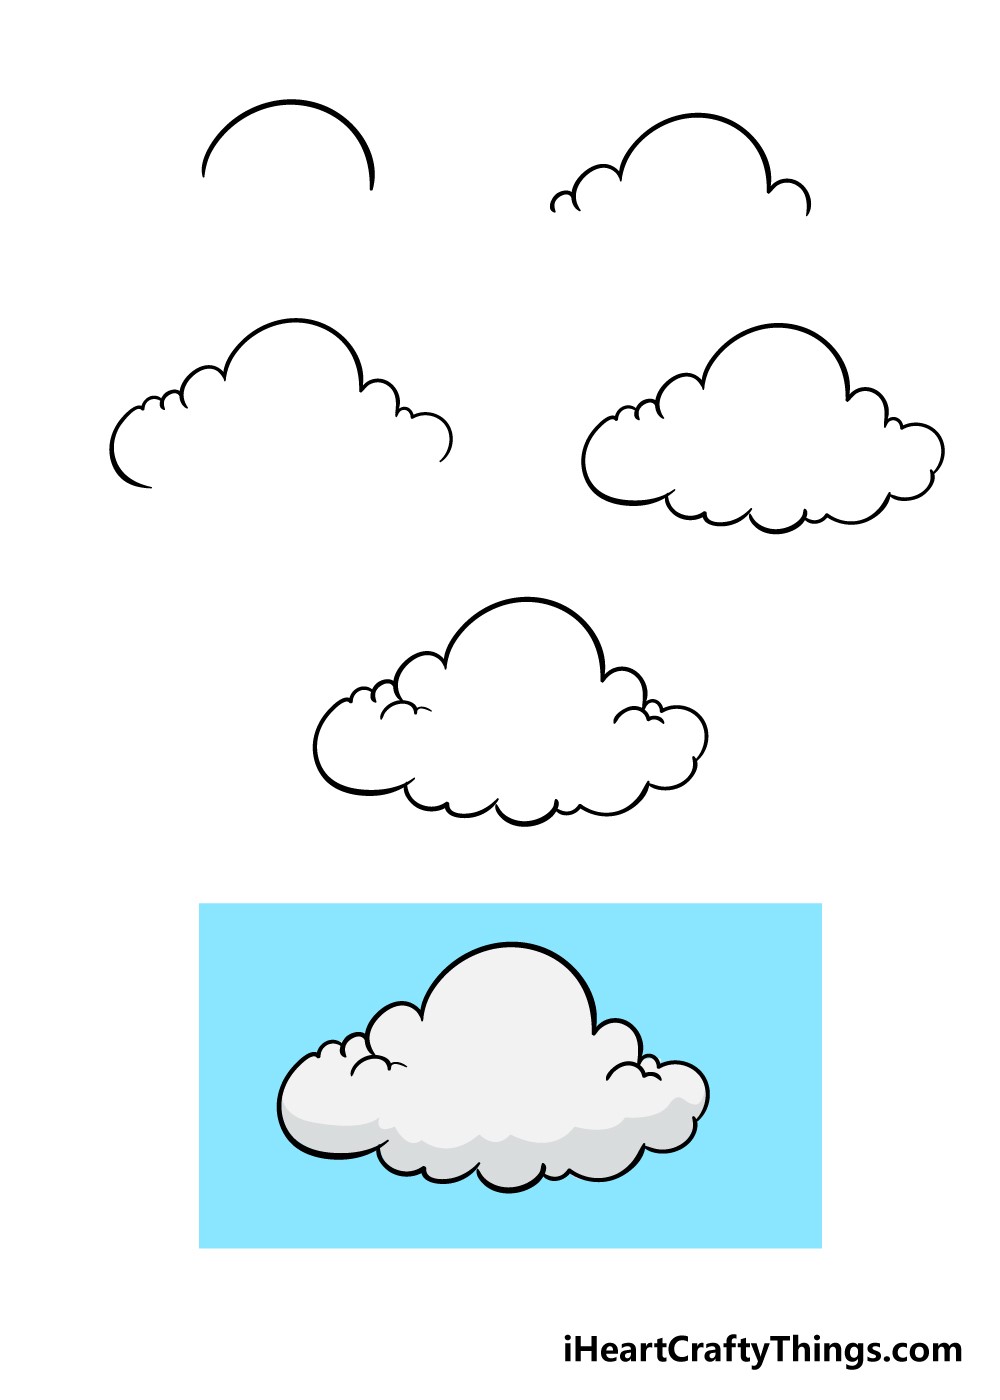 Pilvien idea 1 piirustus